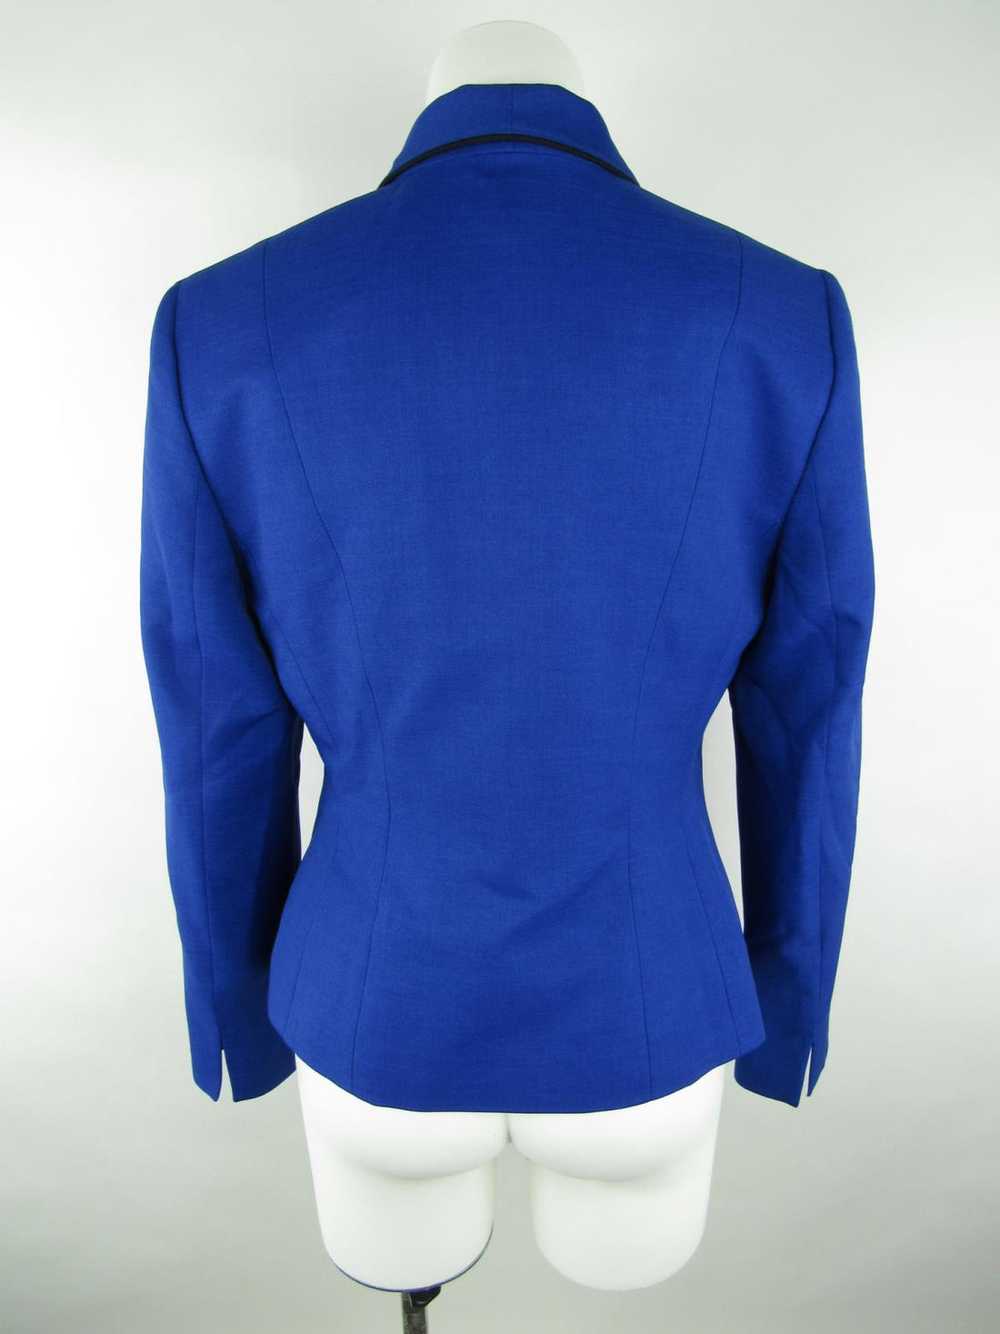 Le Suit Separates Blazer Jacket - image 2